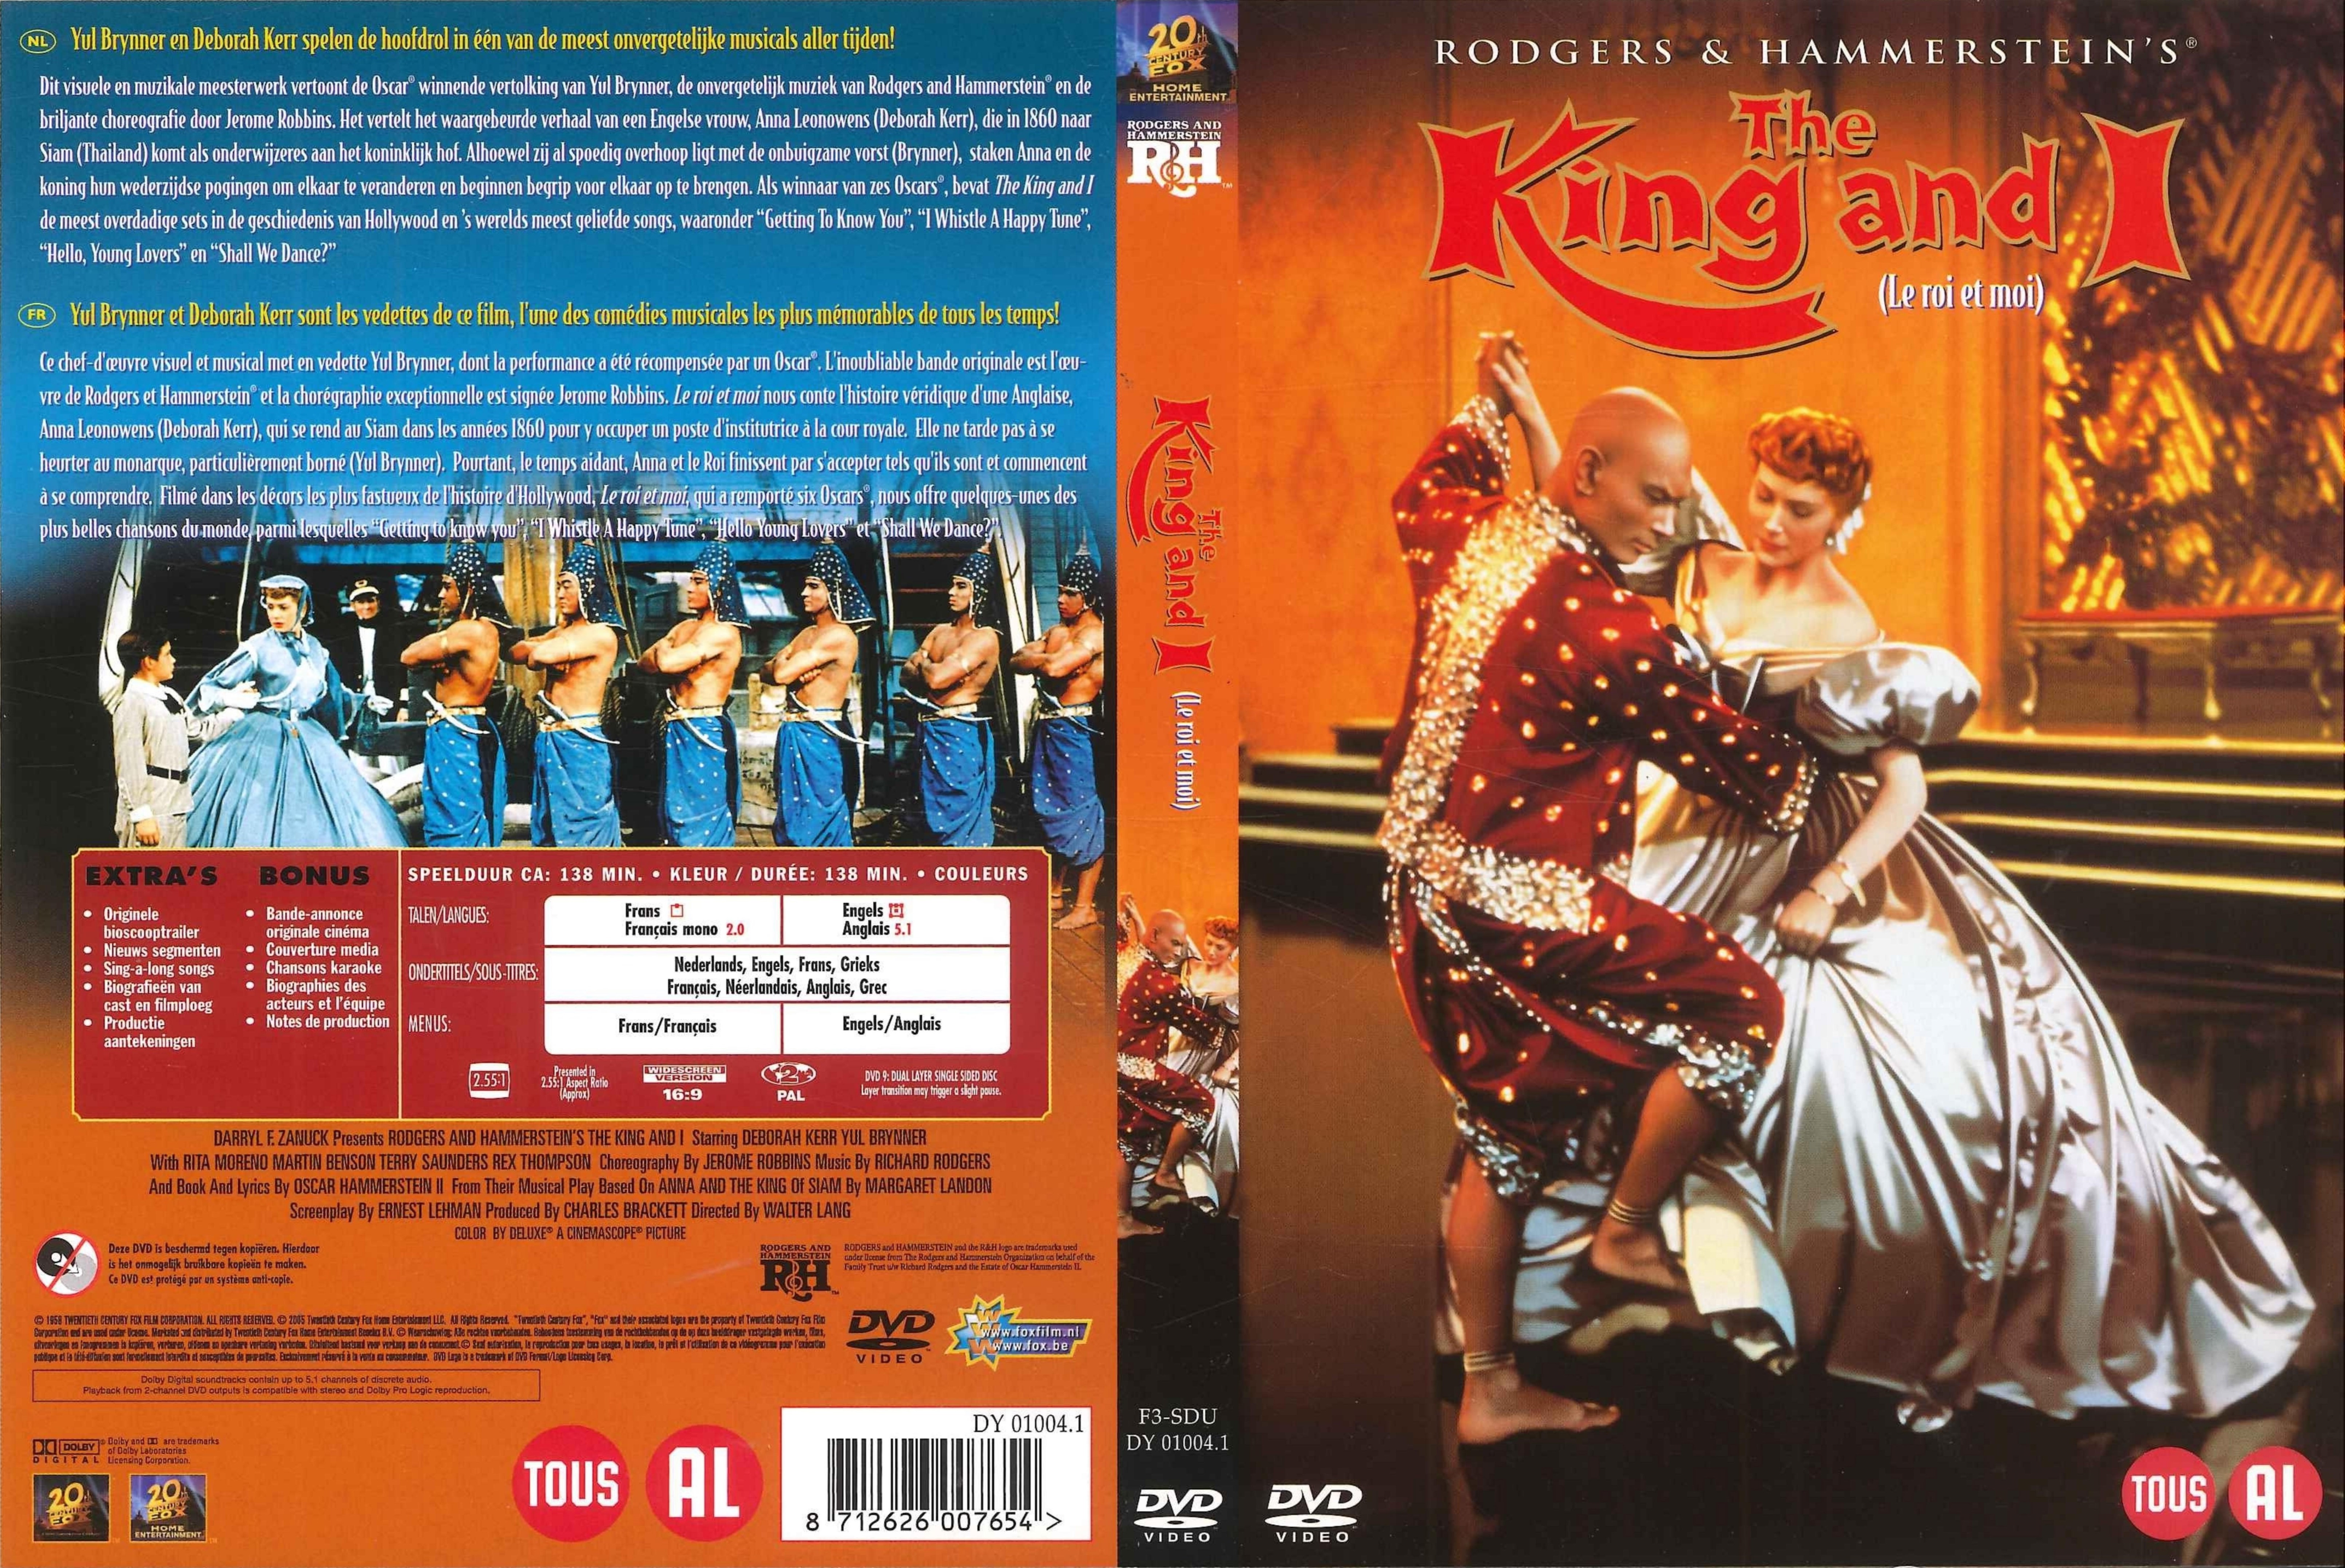 Jaquette DVD Le roi et moi (film) v3